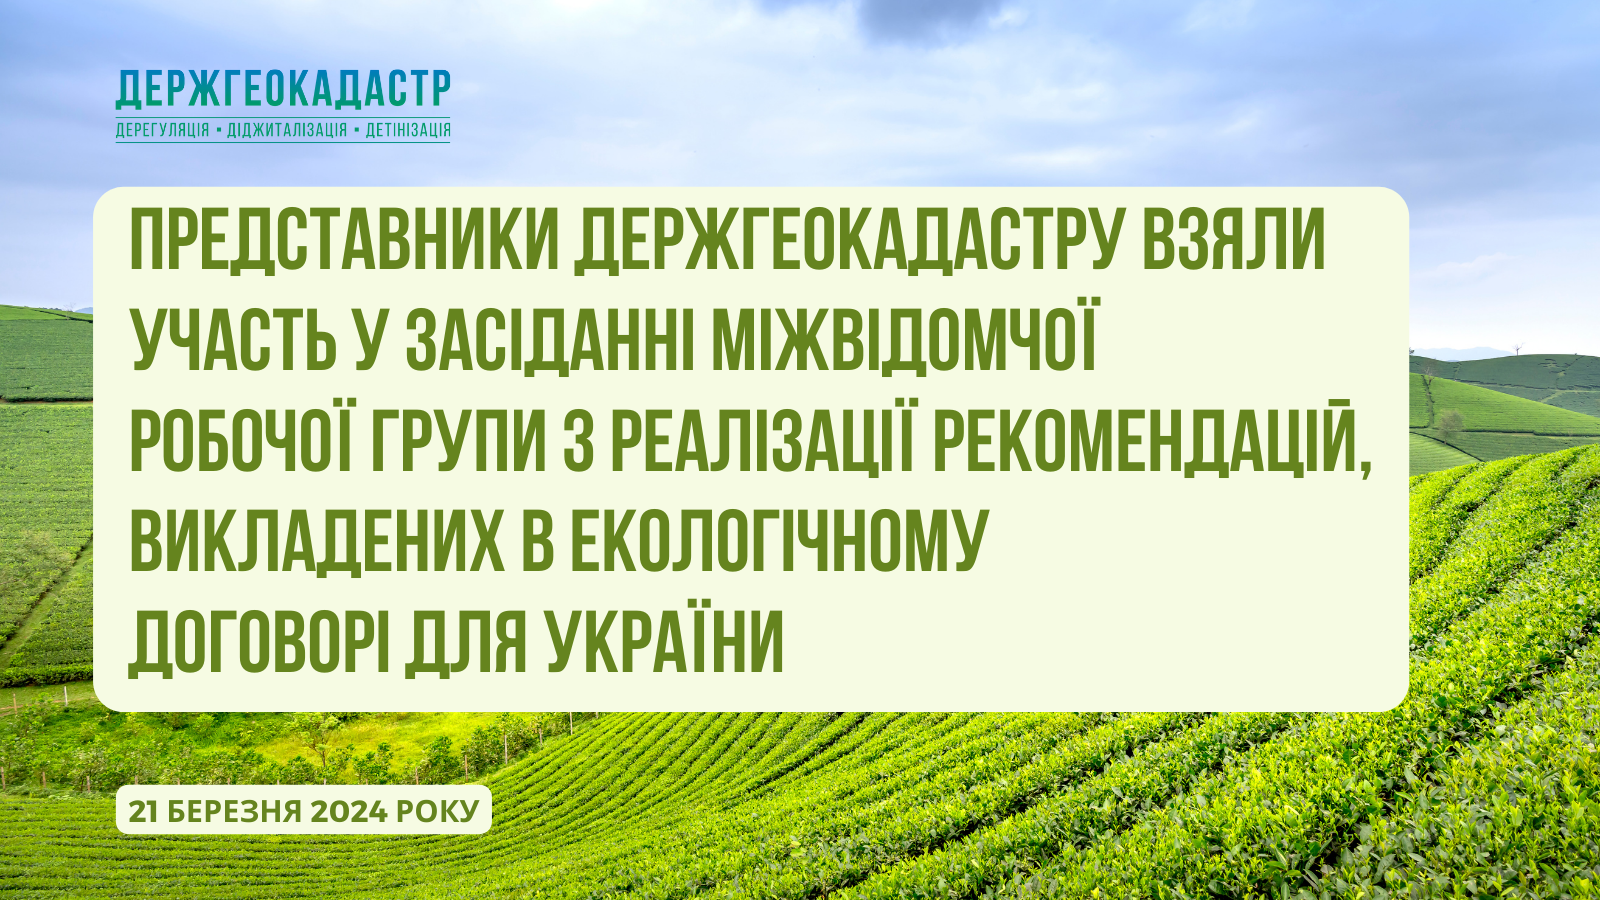 Представники Держгеокадастру взяли участь у засіданні Міжвідомчої робочої групи з реалізації Рекомендацій, викладених в Екологічному договорі для України